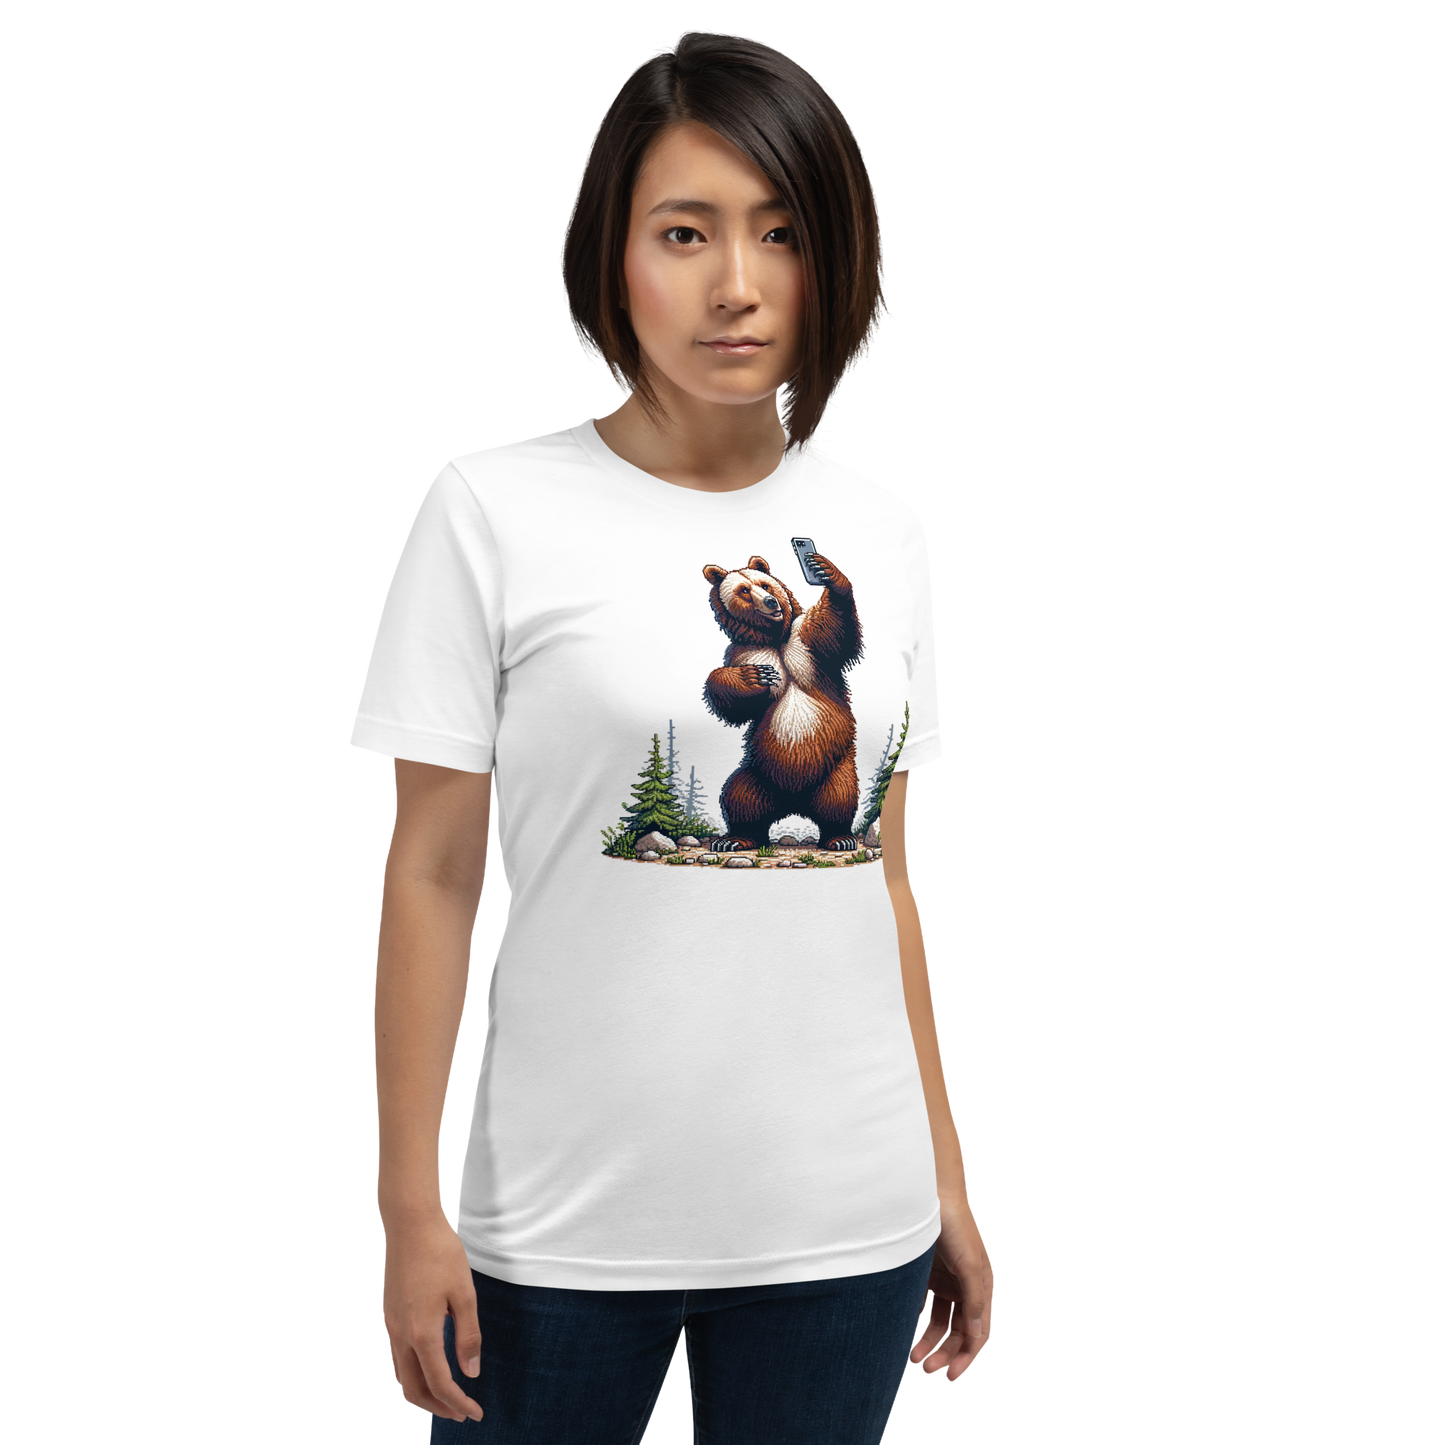 "Bear Selfie" Unisex Shirt